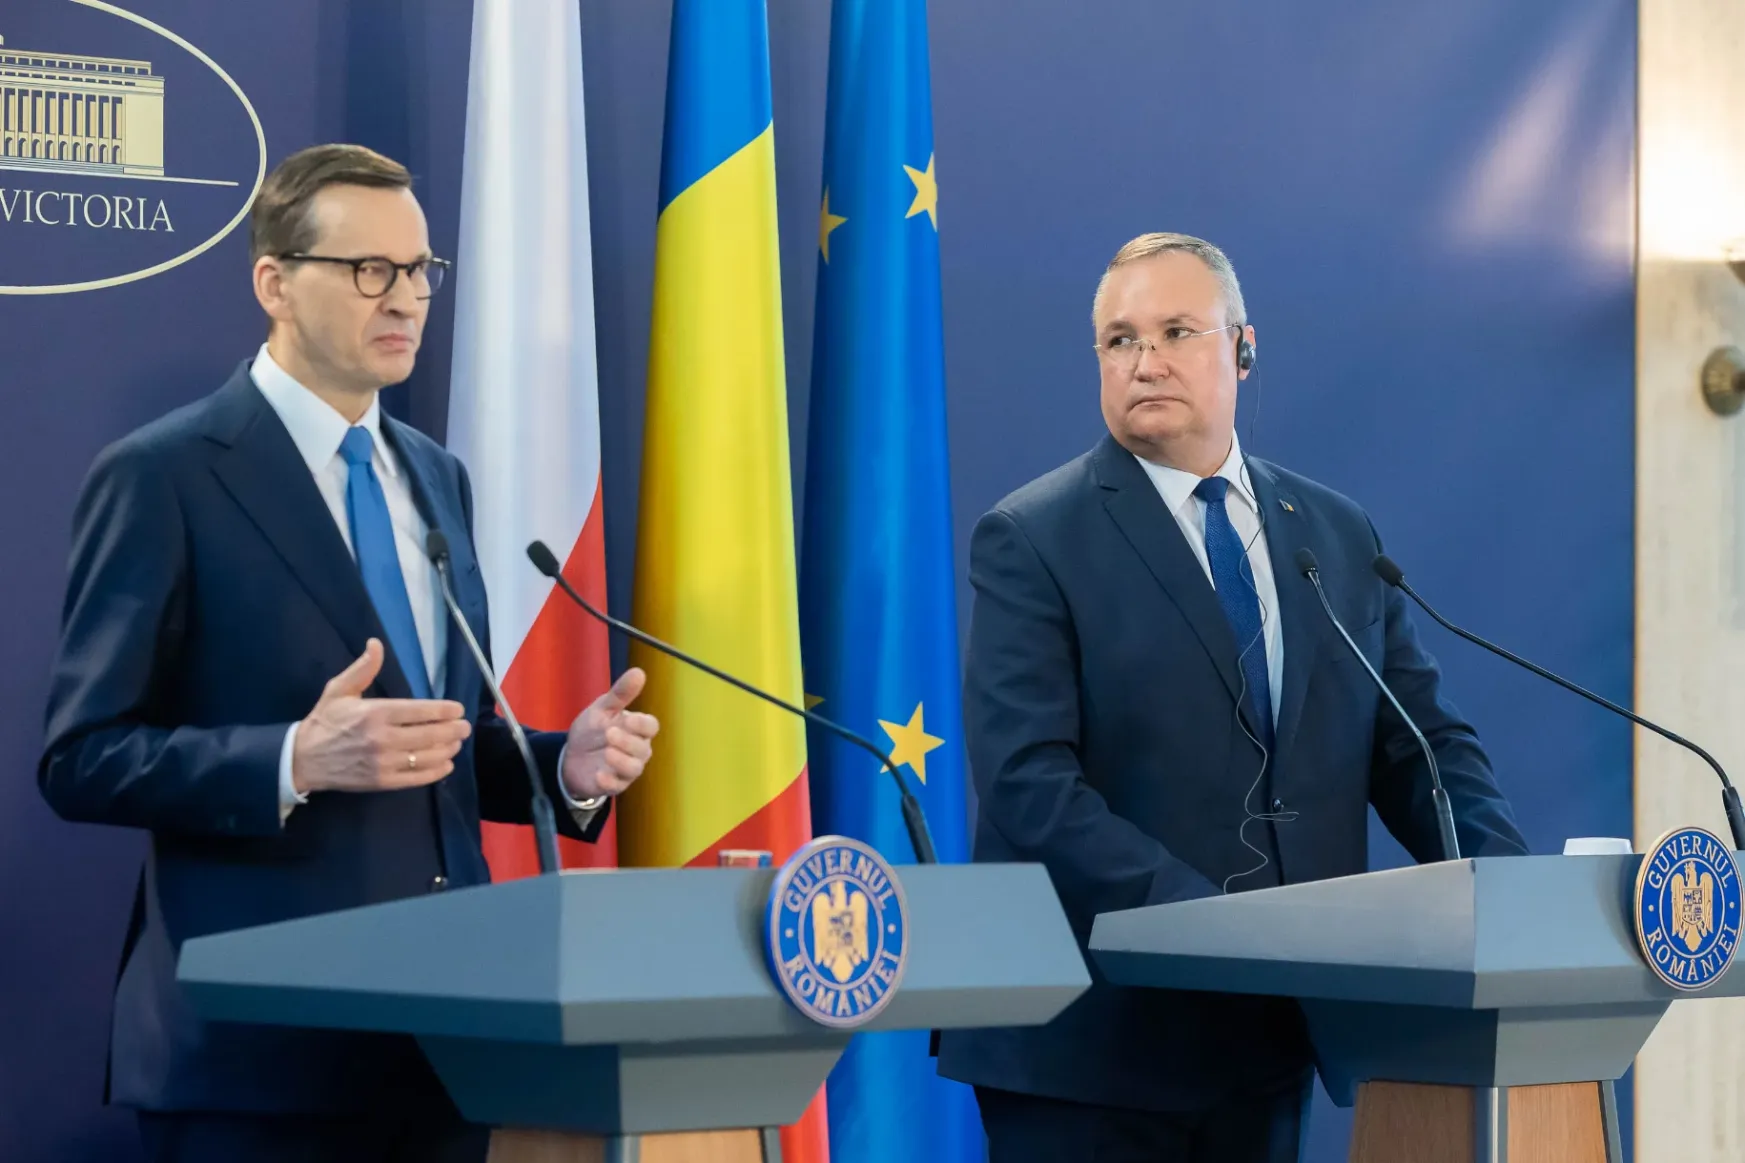 Román-lengyel együttes kormányülés: a két ország közösen fejlesztené a védelmi iparát